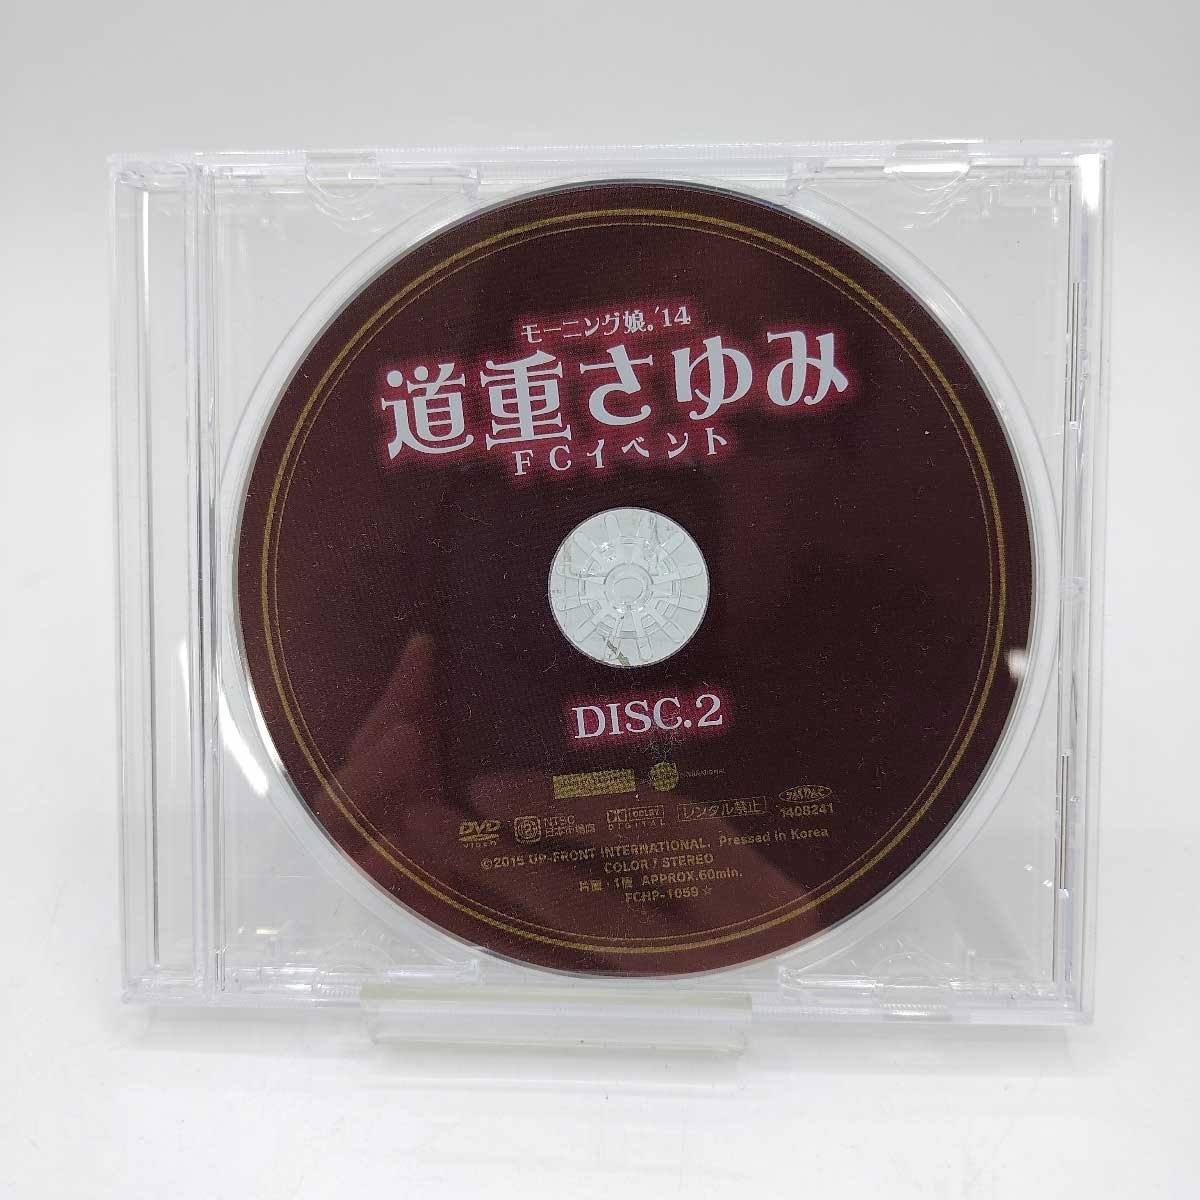 【中古】モーニング娘。'14 道重さゆみ FCイベント DISC.2のみ DVD_画像1